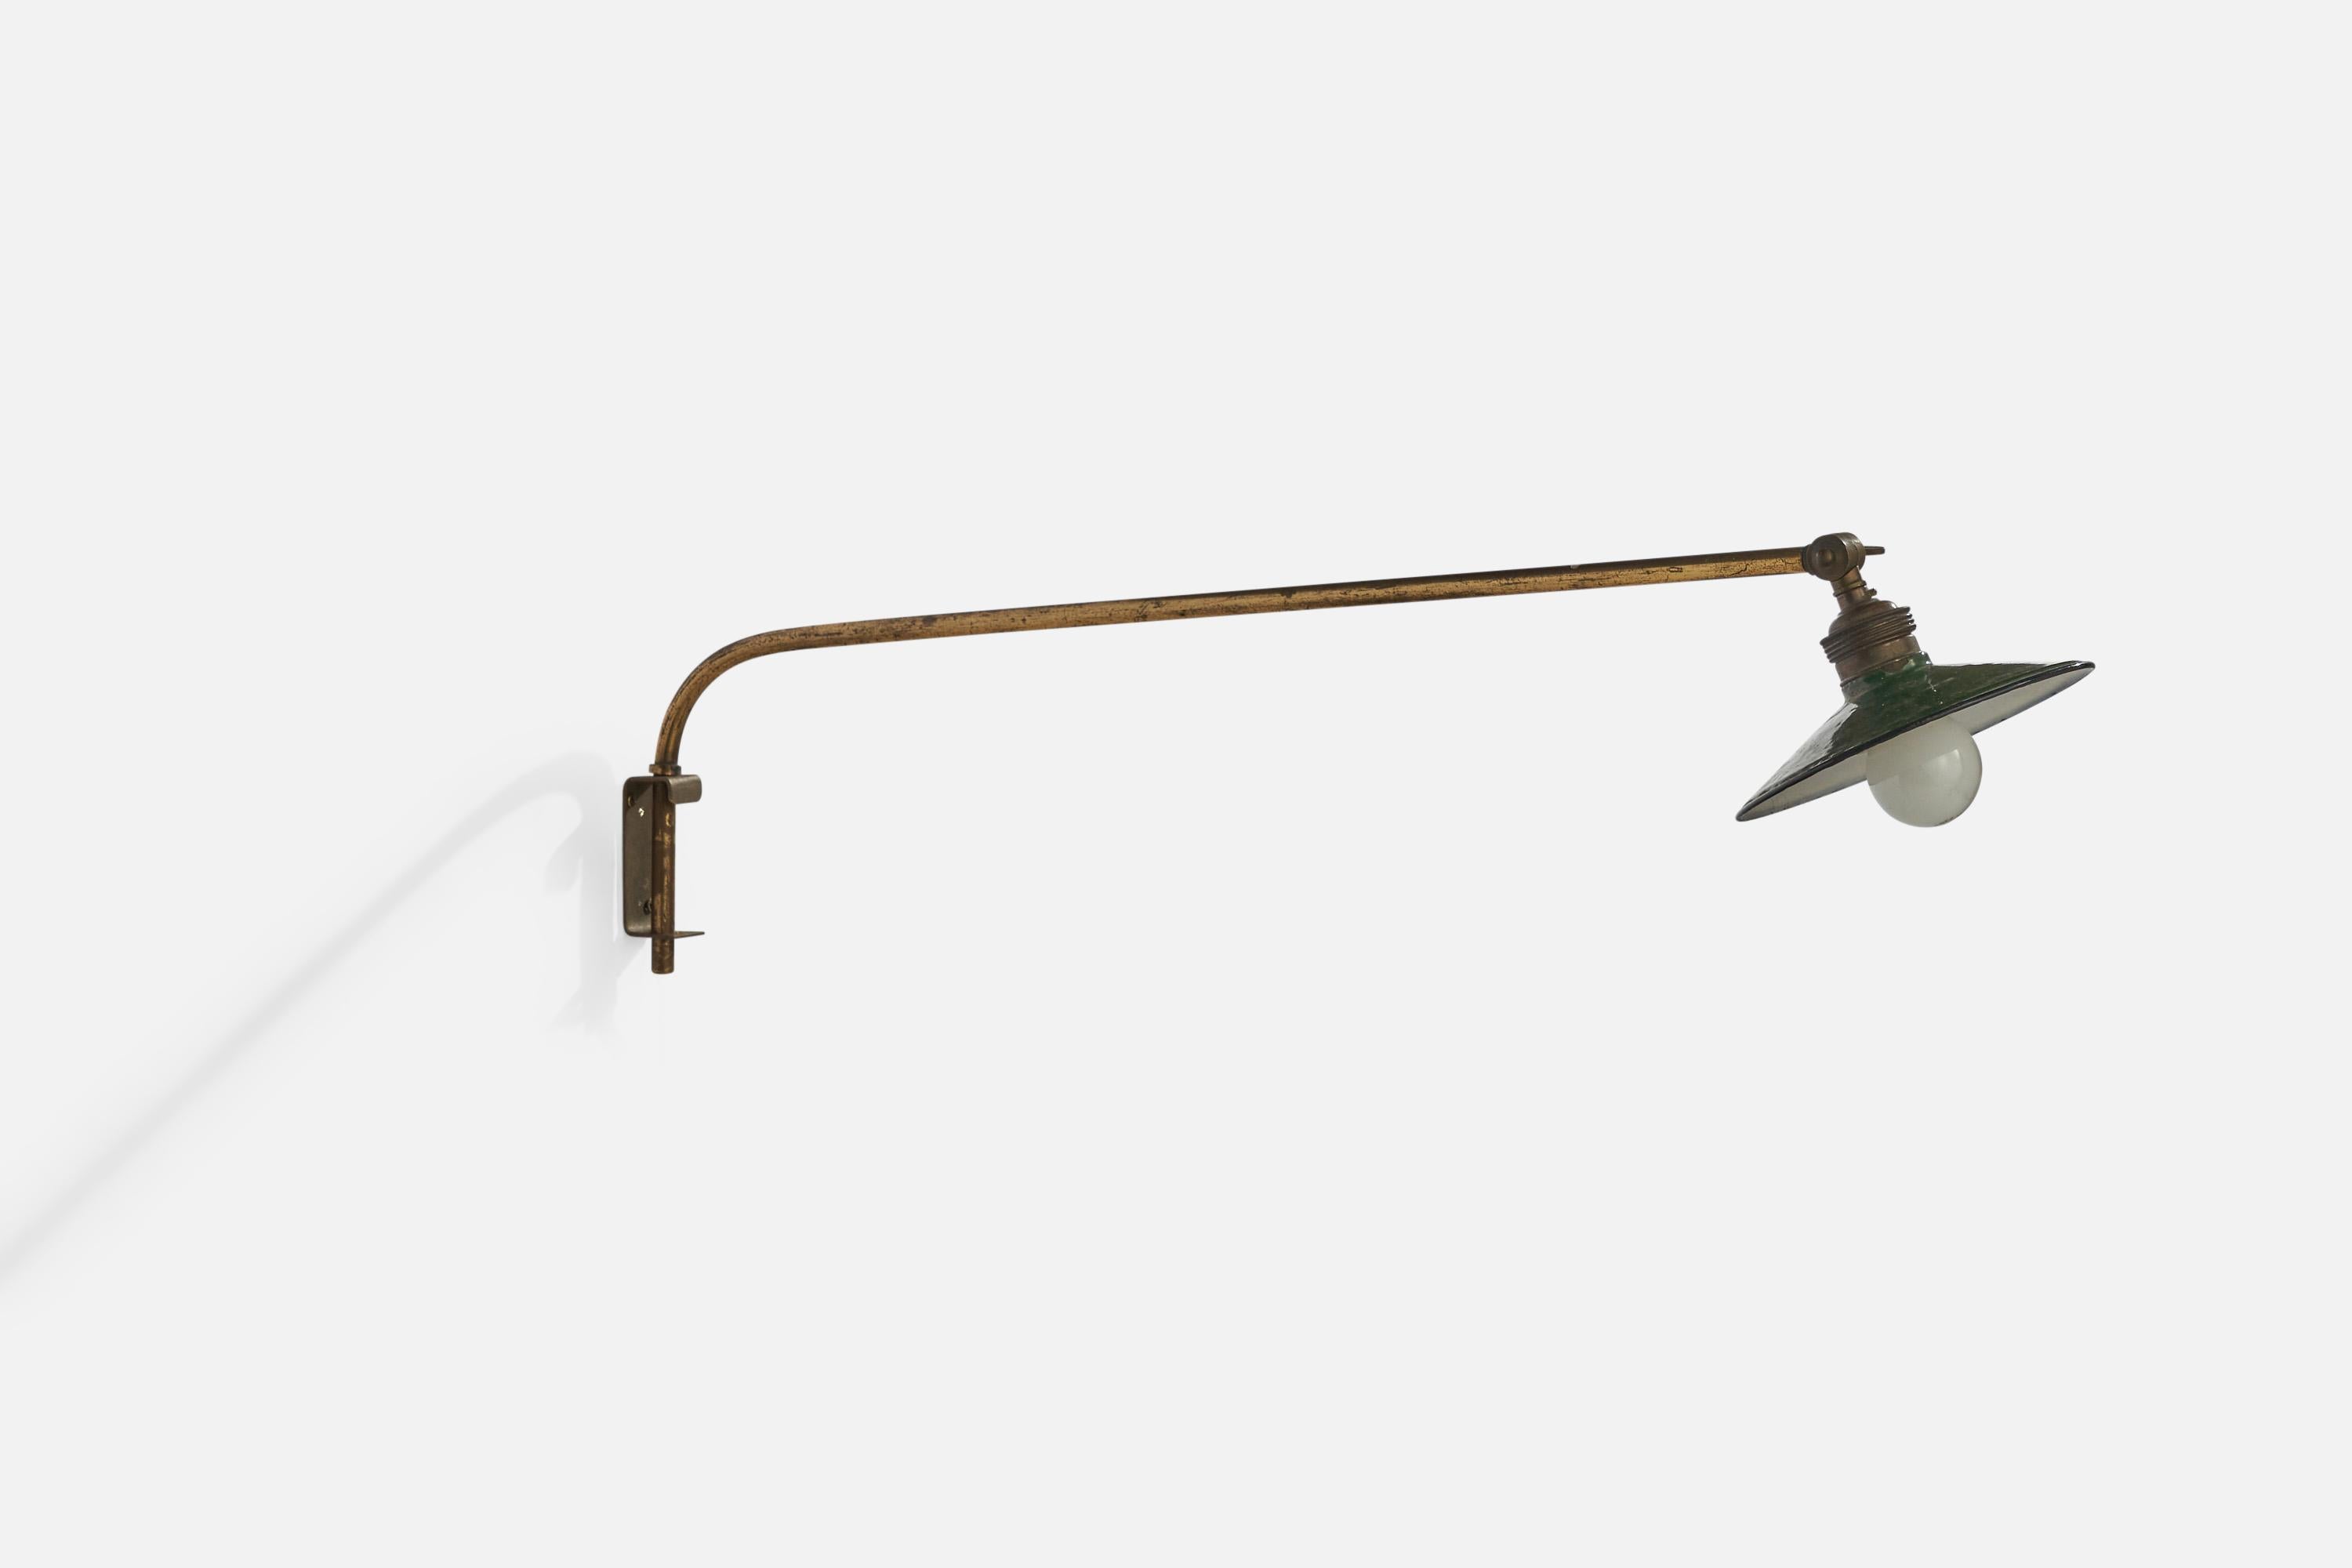 Applique en laiton et en métal laqué vert, conçue et produite en Suède, C.1930.

Veuillez noter que la lampe est configurée pour être branchée et que le cordon est alimenté par le bas de la tige.

Dimensions globales (pouces) : 6